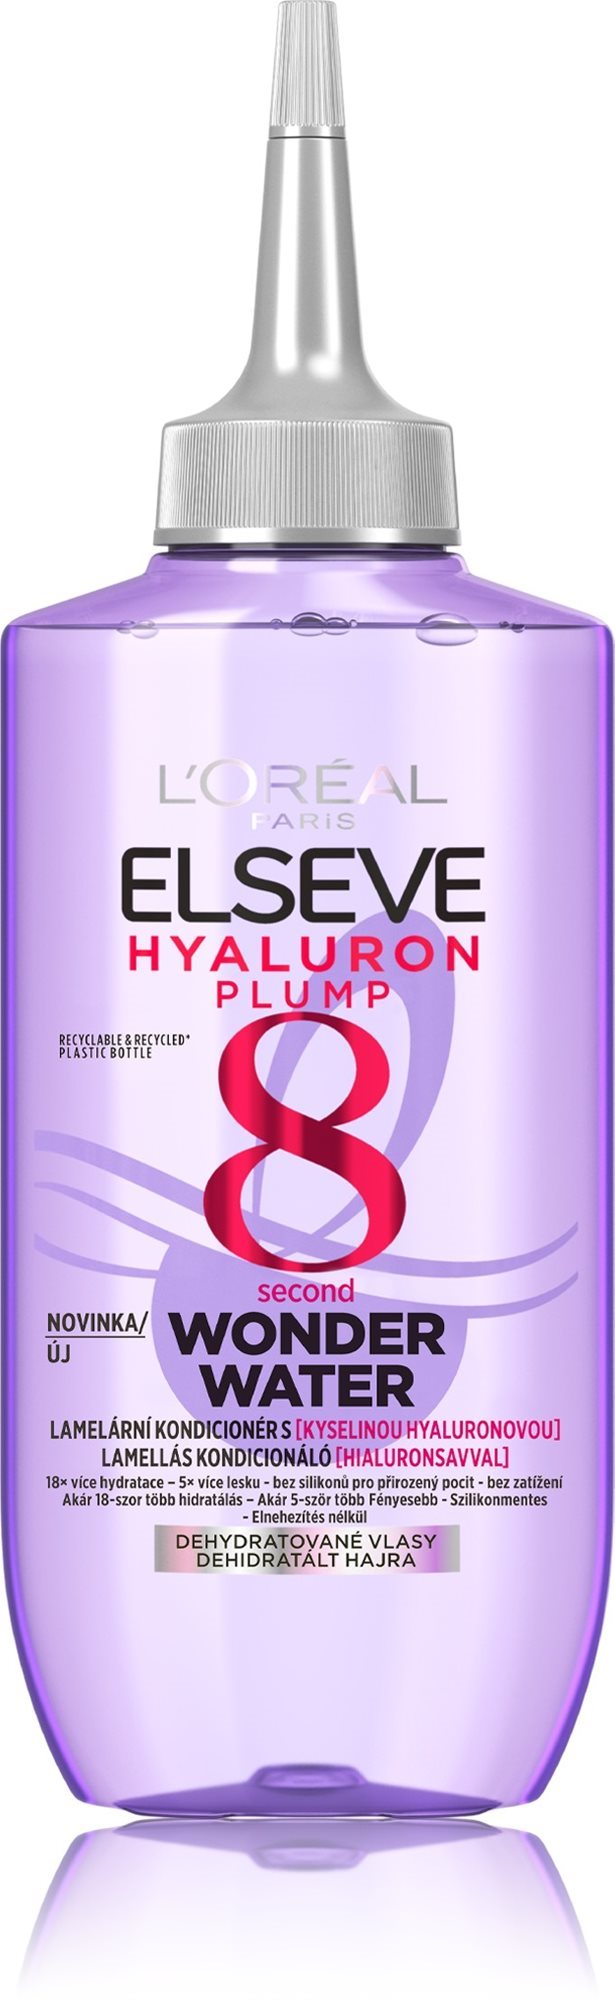 L'ORÉAL PARIS Elseve Hyaluron Plump 8 second Wonder Water, 200 ml